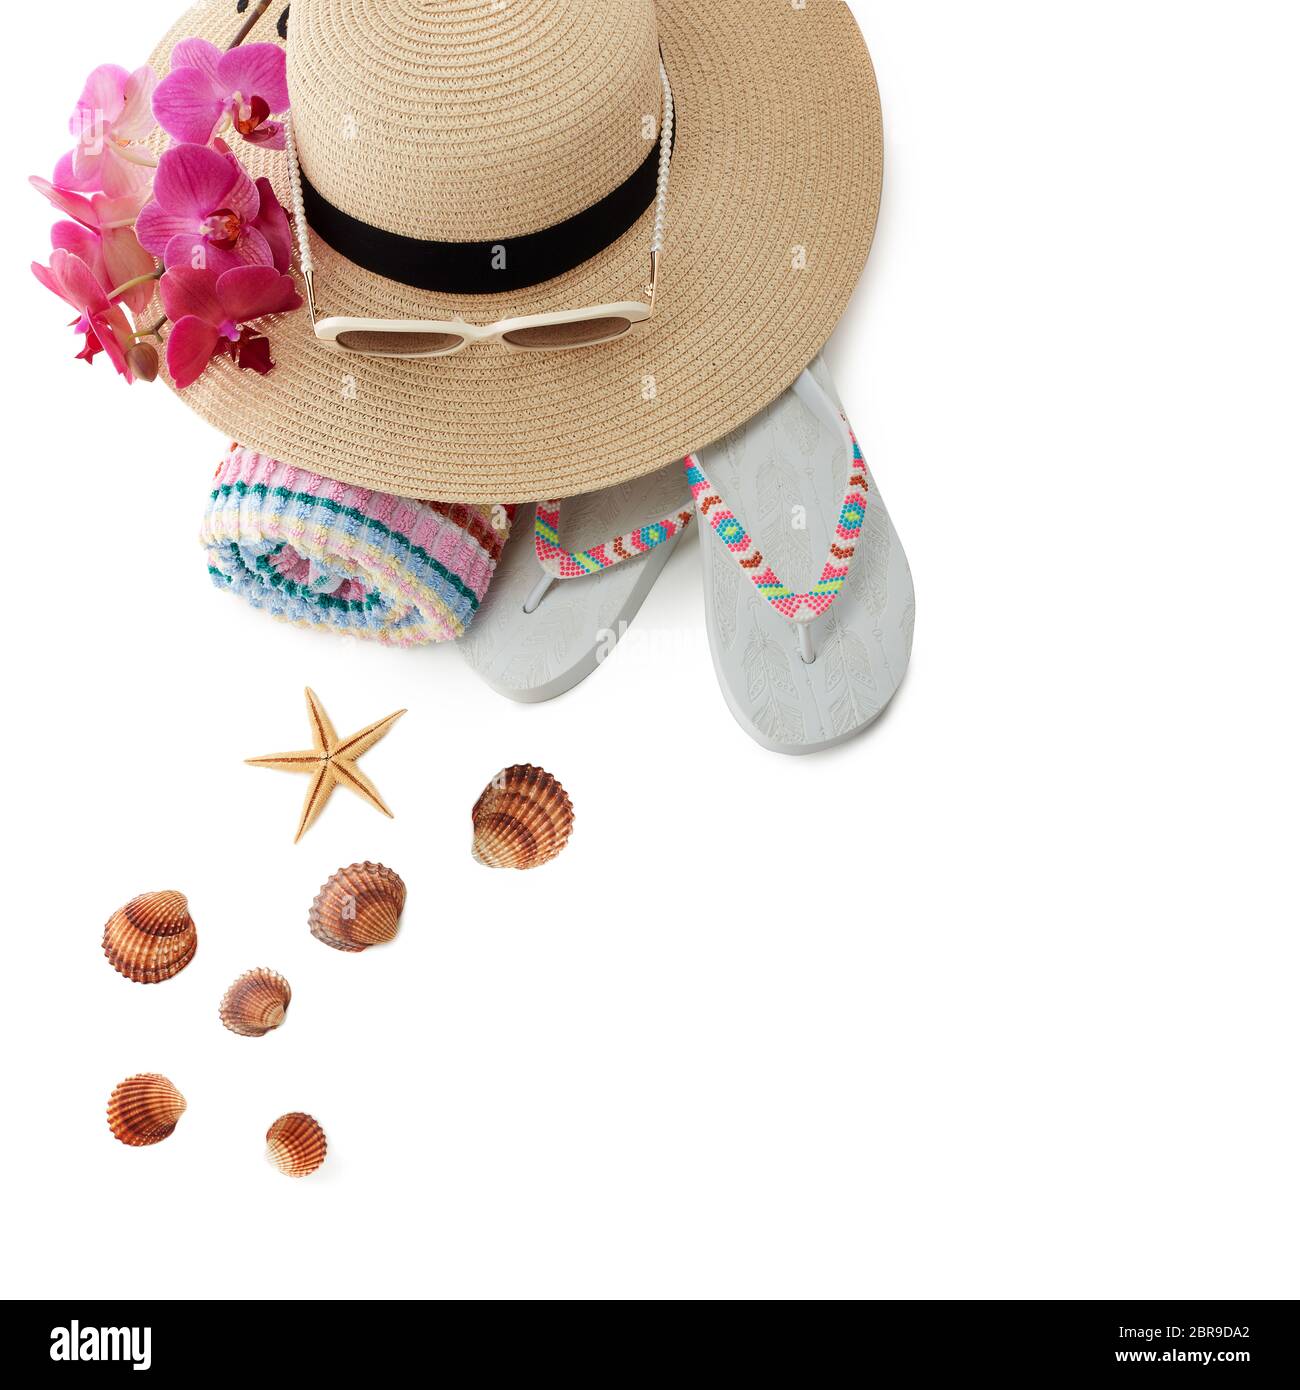 Accessori spiaggia: Infradito, cappello di paglia, occhiali da sole, asciugamano isolato su sfondo bianco. Vista dall'alto con spazio per la copia. Concetto di vacanza e viaggio in mare Foto Stock